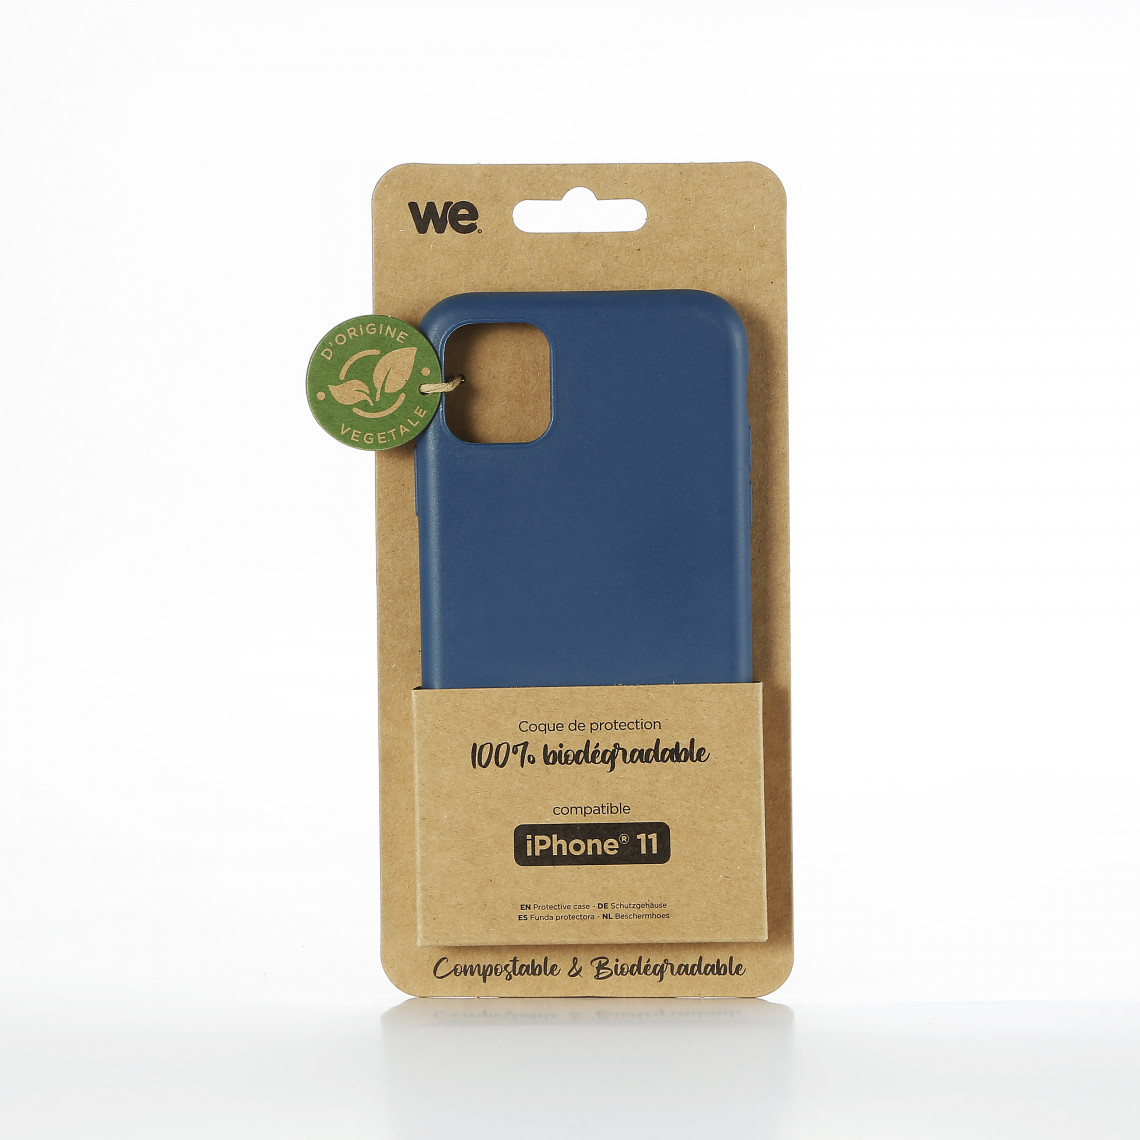 We - WE Coque Bio Apple iPhone 11 - Eco-Friendly Biodégradable et Compostable - Housse Etui Antichoc, Compatible avec L'induction, Ultra Protection Bumper, Anti Rayure - Bleu - Coque, étui smartphone